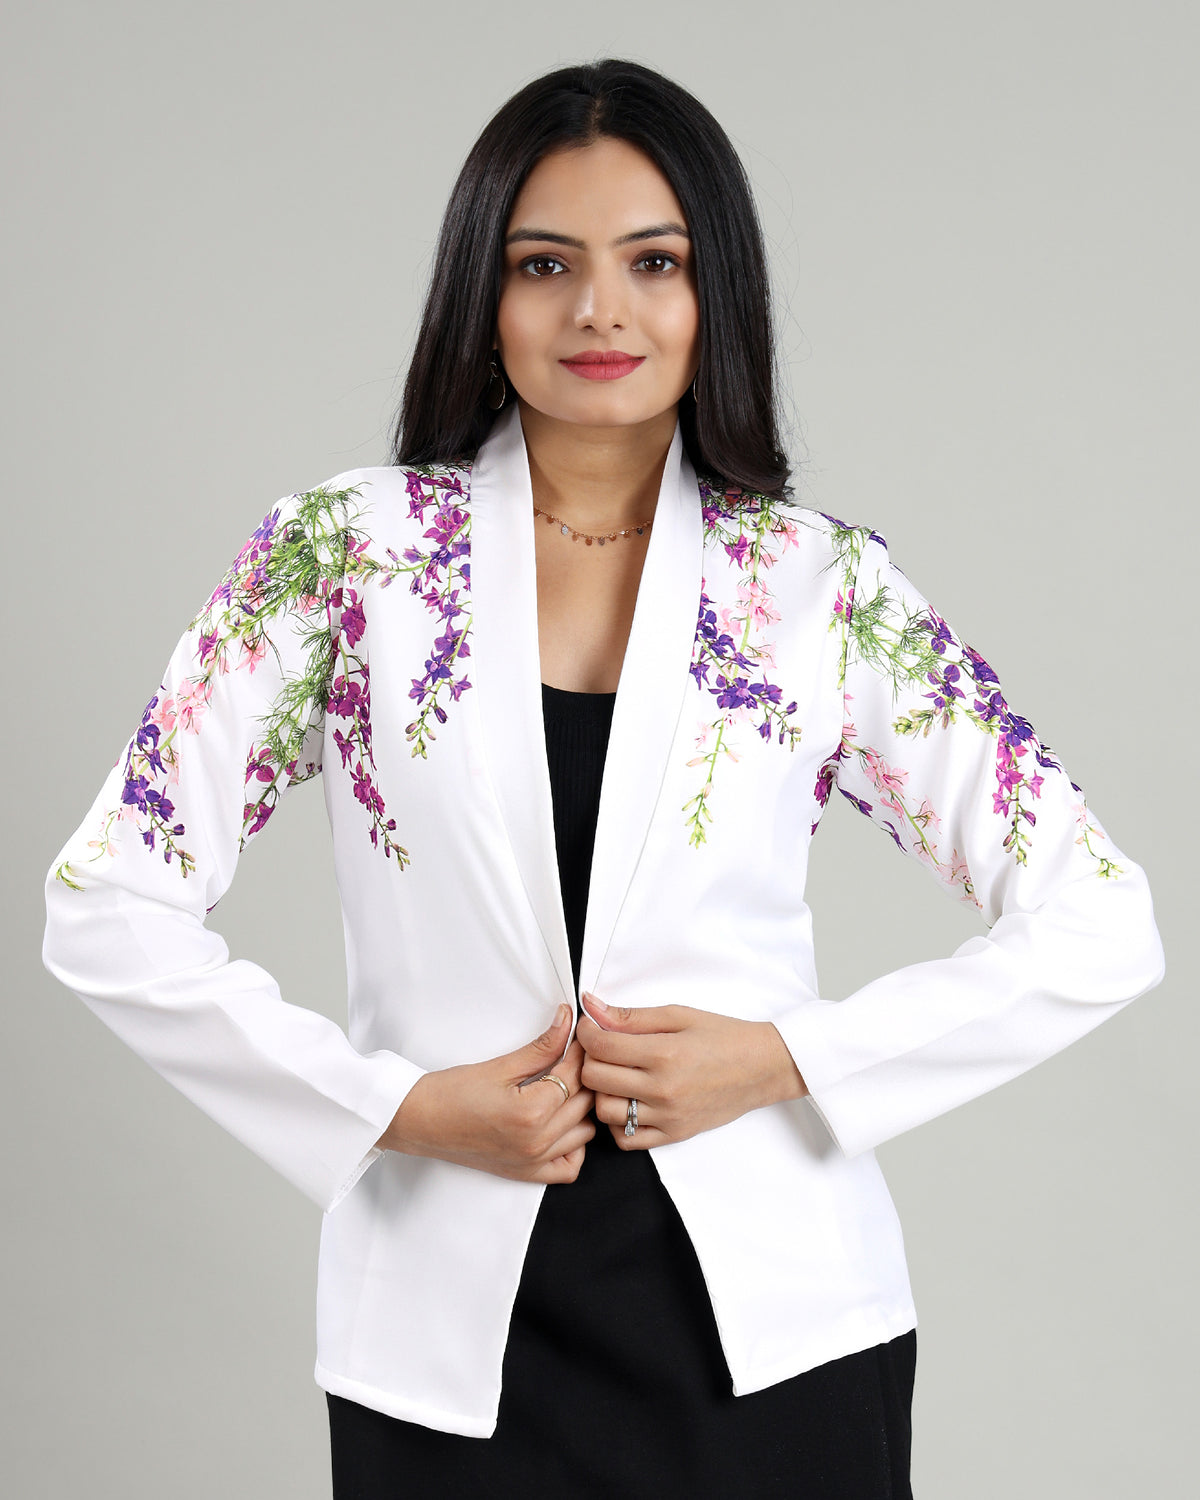 Floral with a Twist: A Unique Women's Jacket